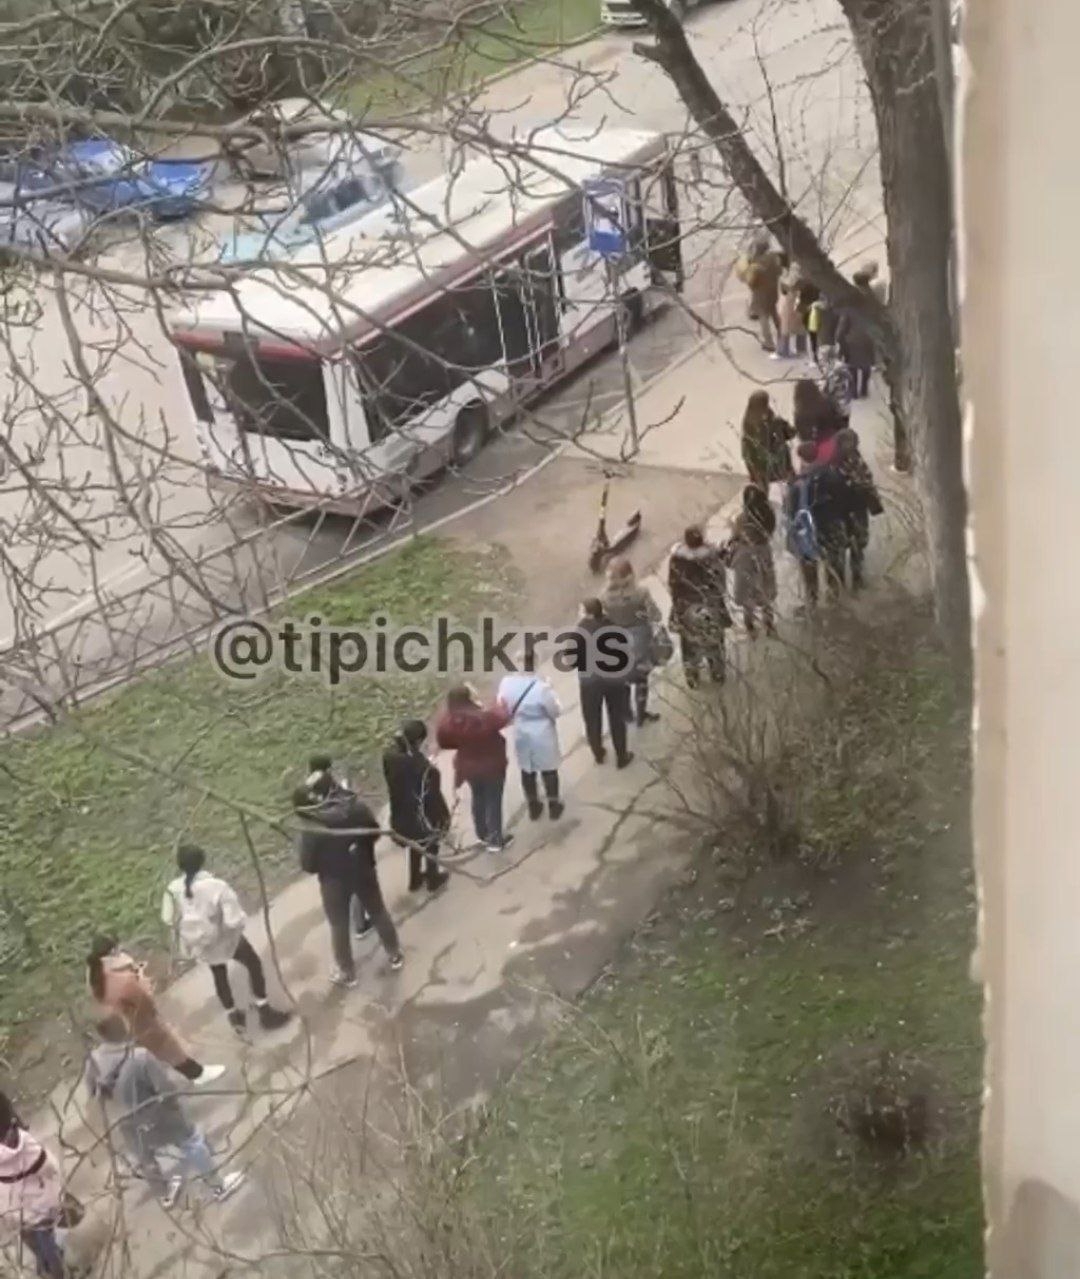 В очереди на автобус стояли более 30 пассажиров скриншот из видео https://t.me/tipichkras/27132